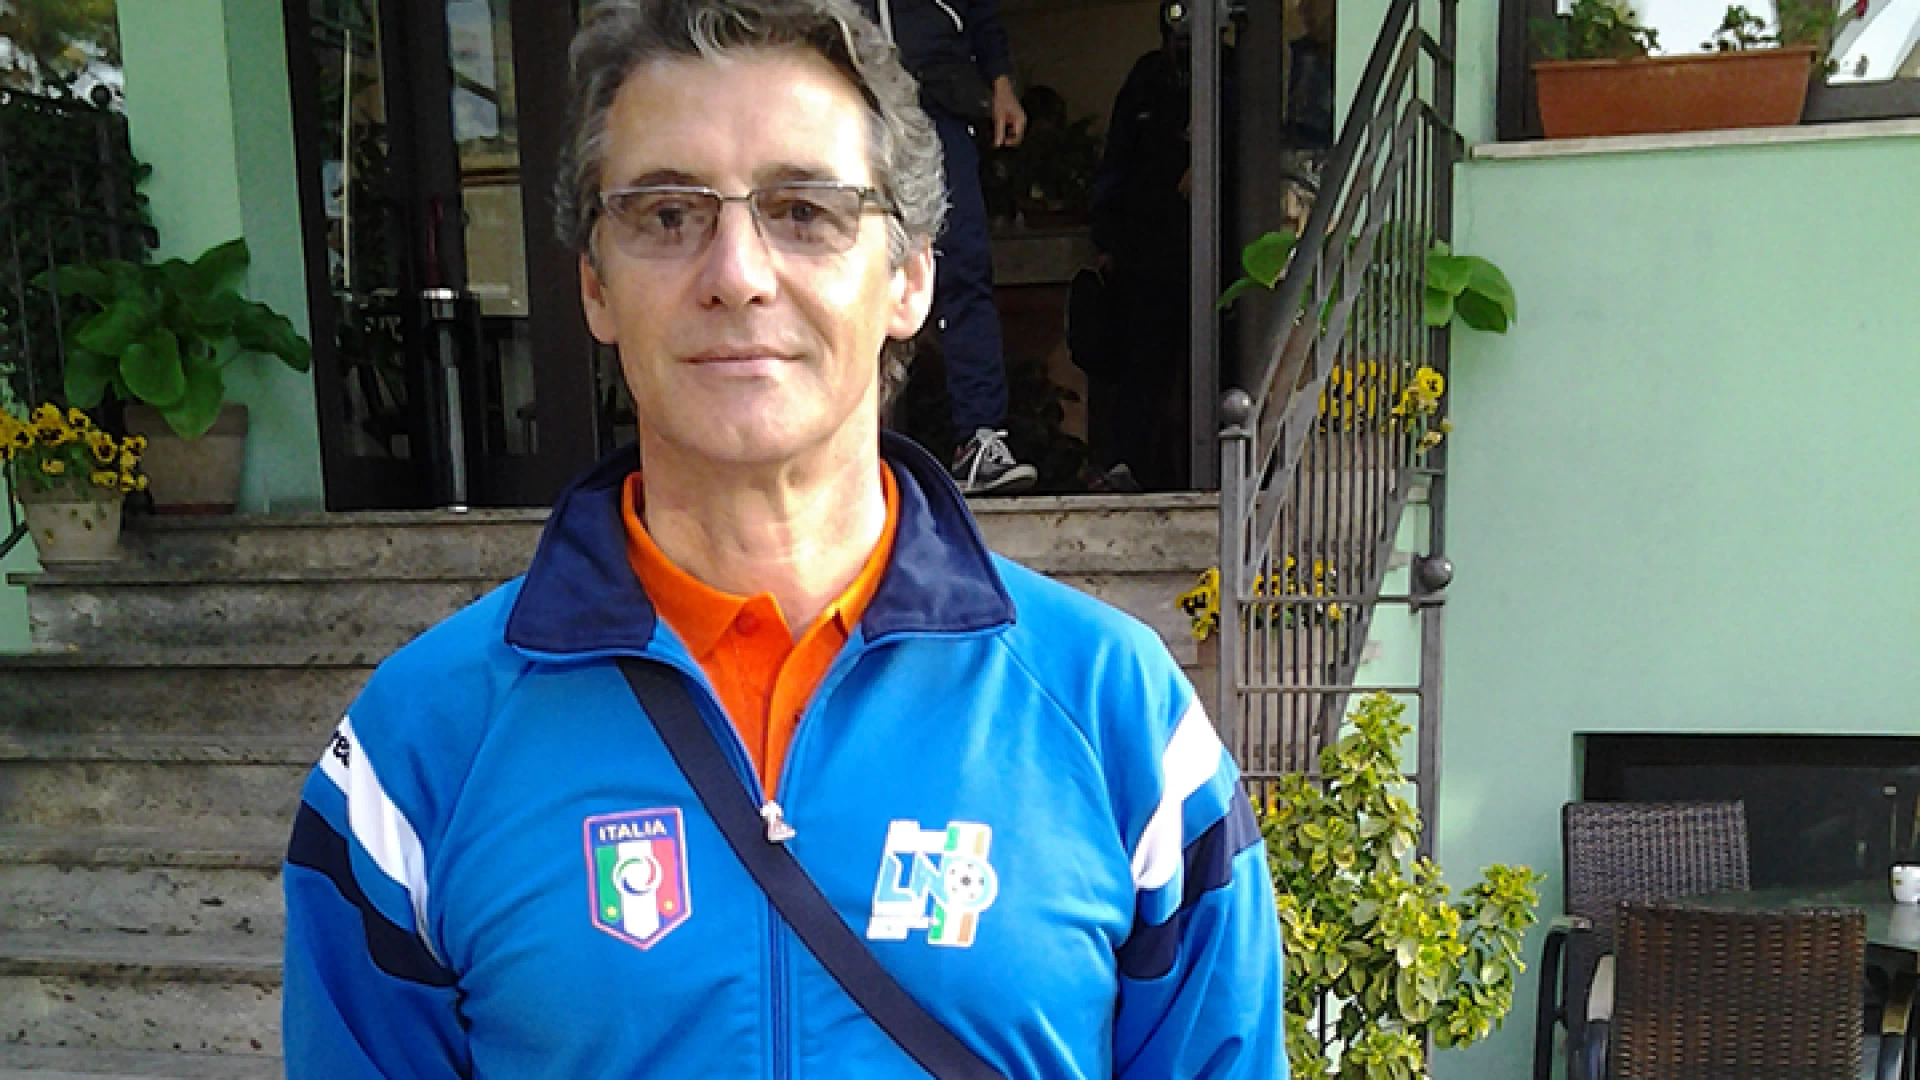 Torneo delle Regioni, soddisfazione per la Boys Roccaravindola. Vincenzo Rossi dei giovanissimi farà parte della spedizione in Abruzzo.